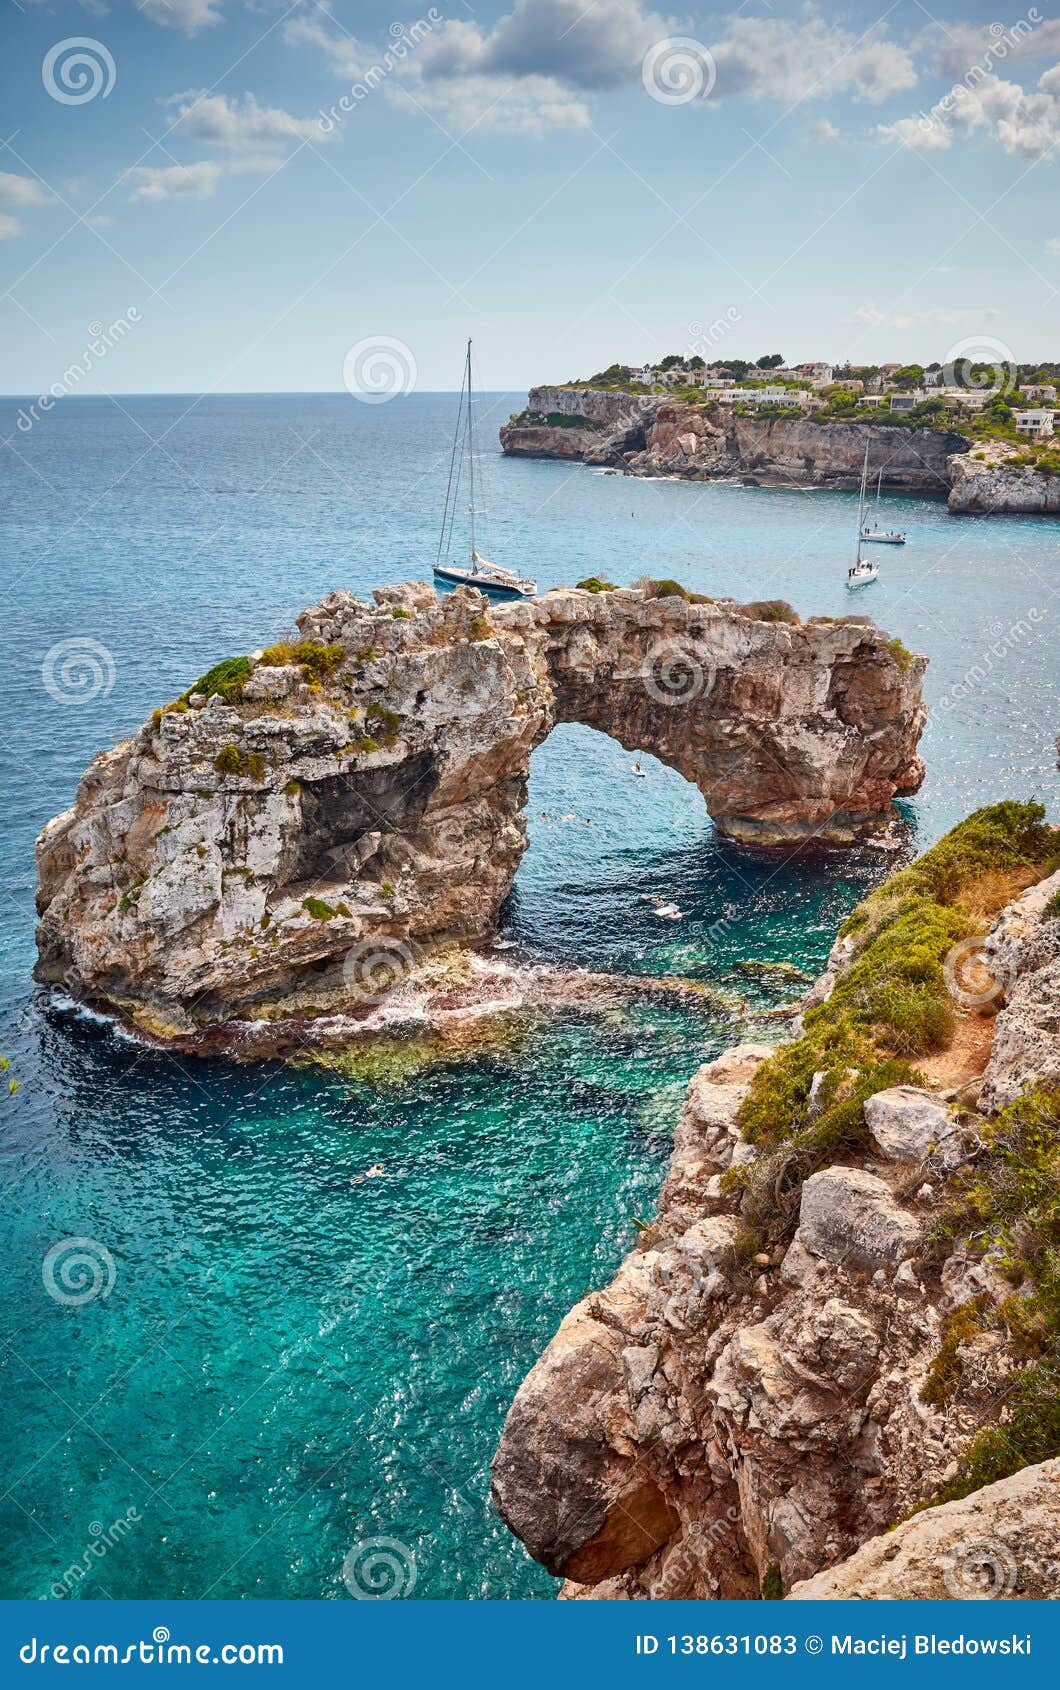 es pontas rock arch at mallorca coast, spain